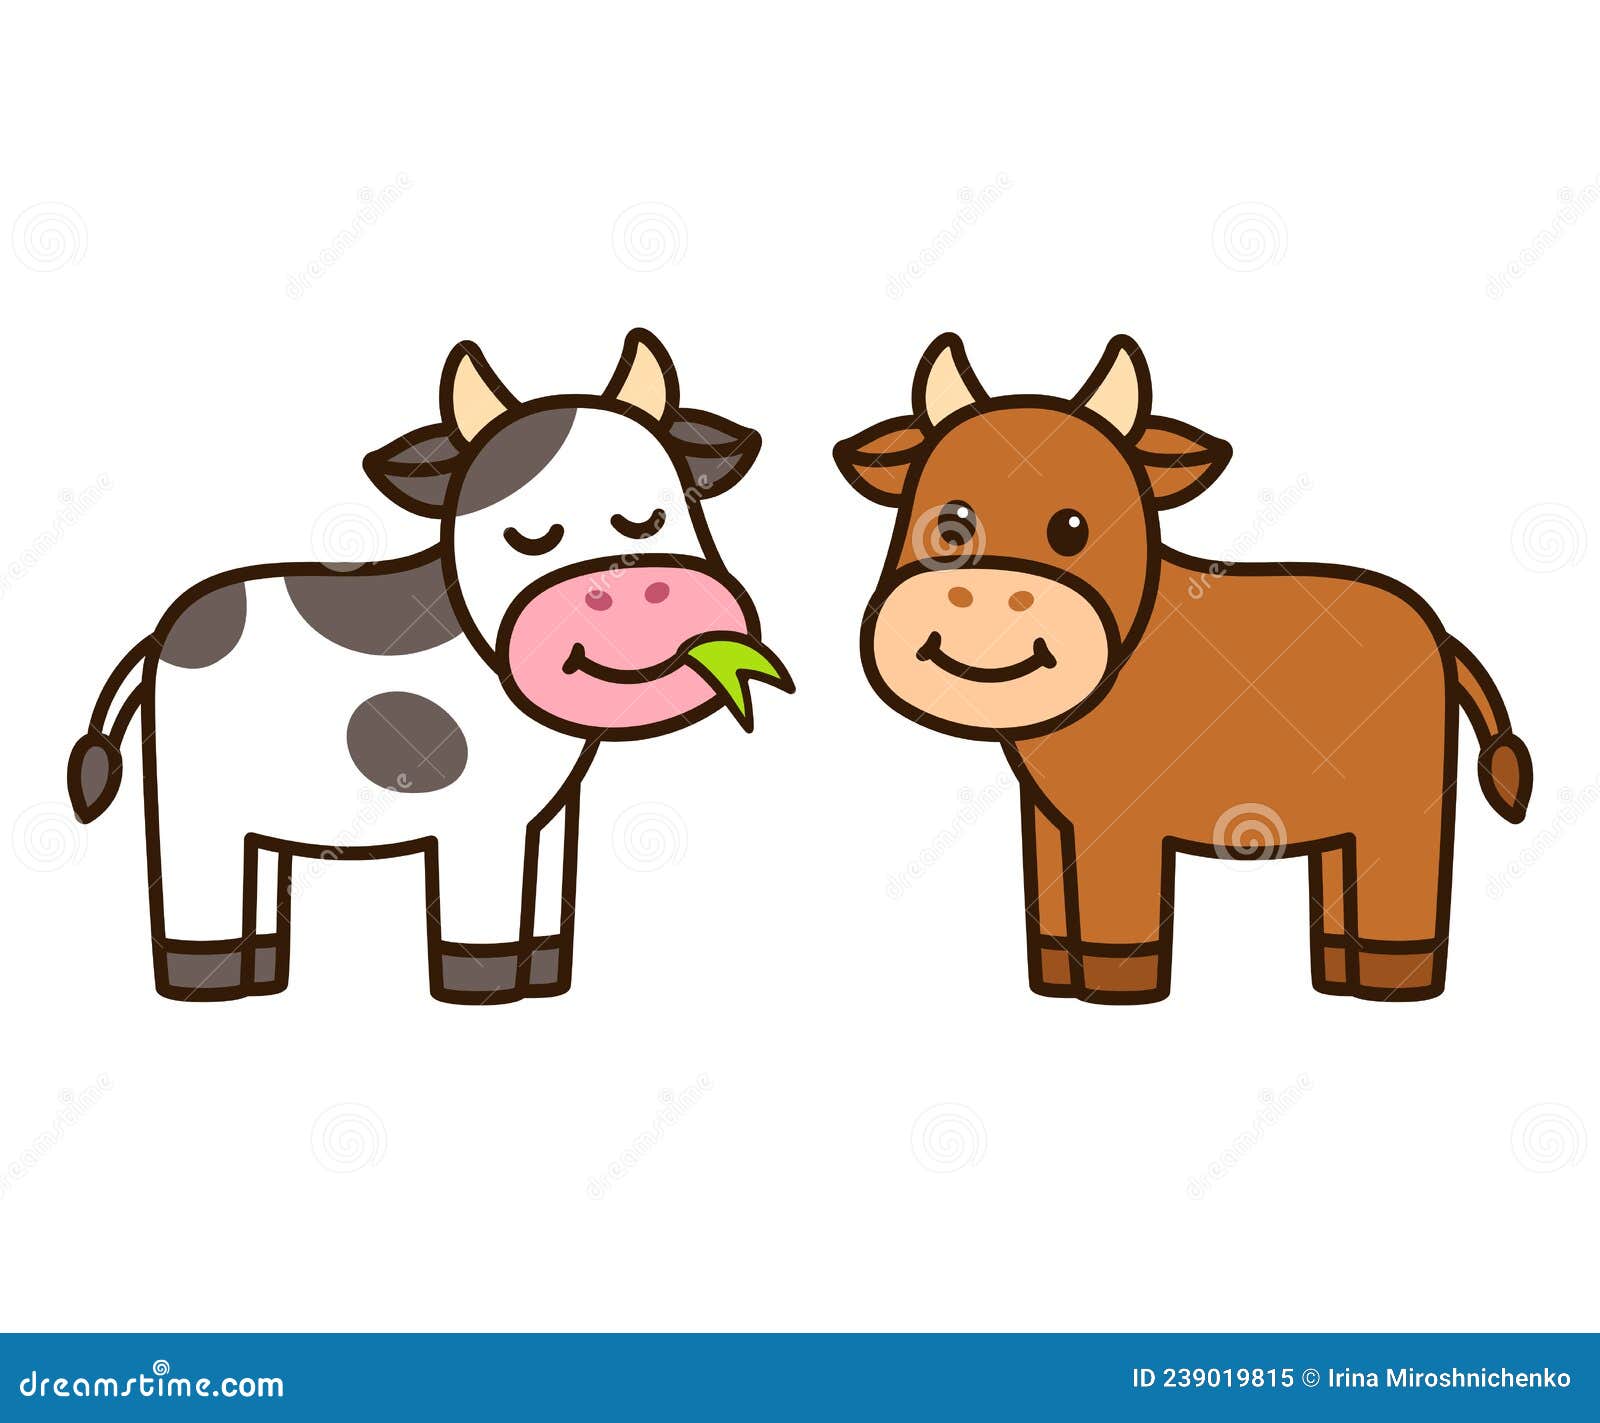 卡通简约一头牛动物设计素材图片下载-素材编号03917028-素材天下图库